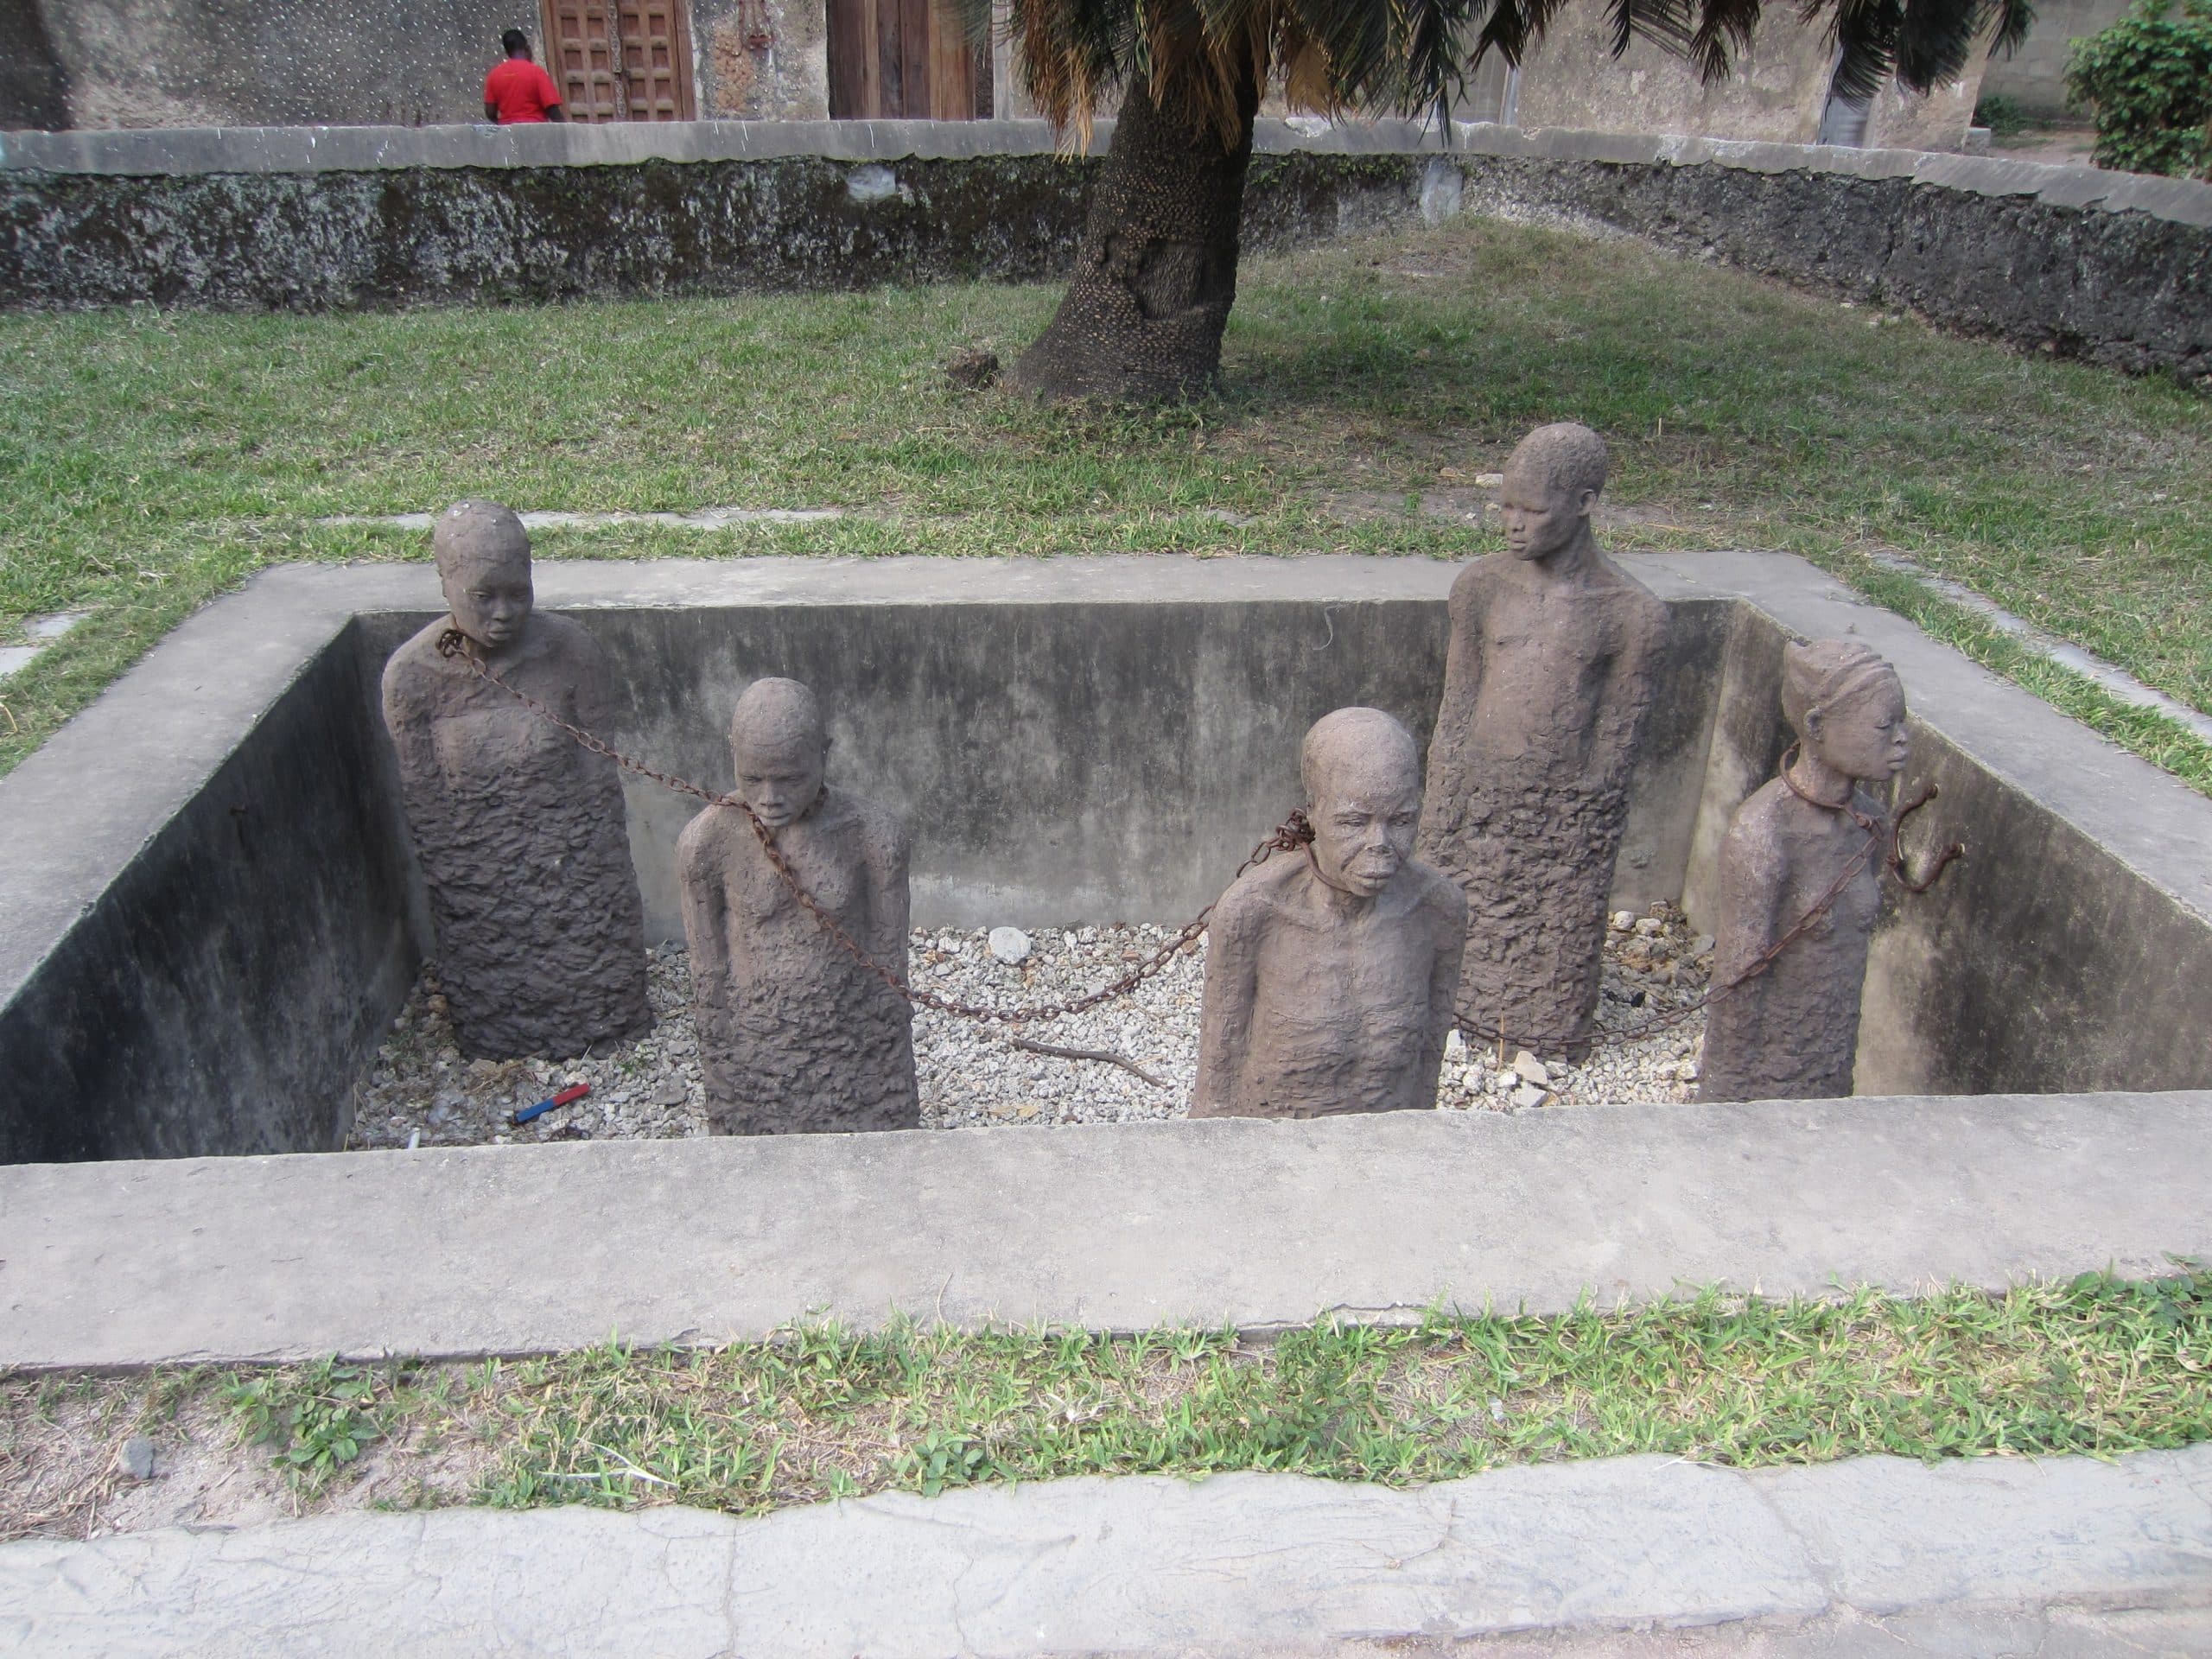 slavery monument